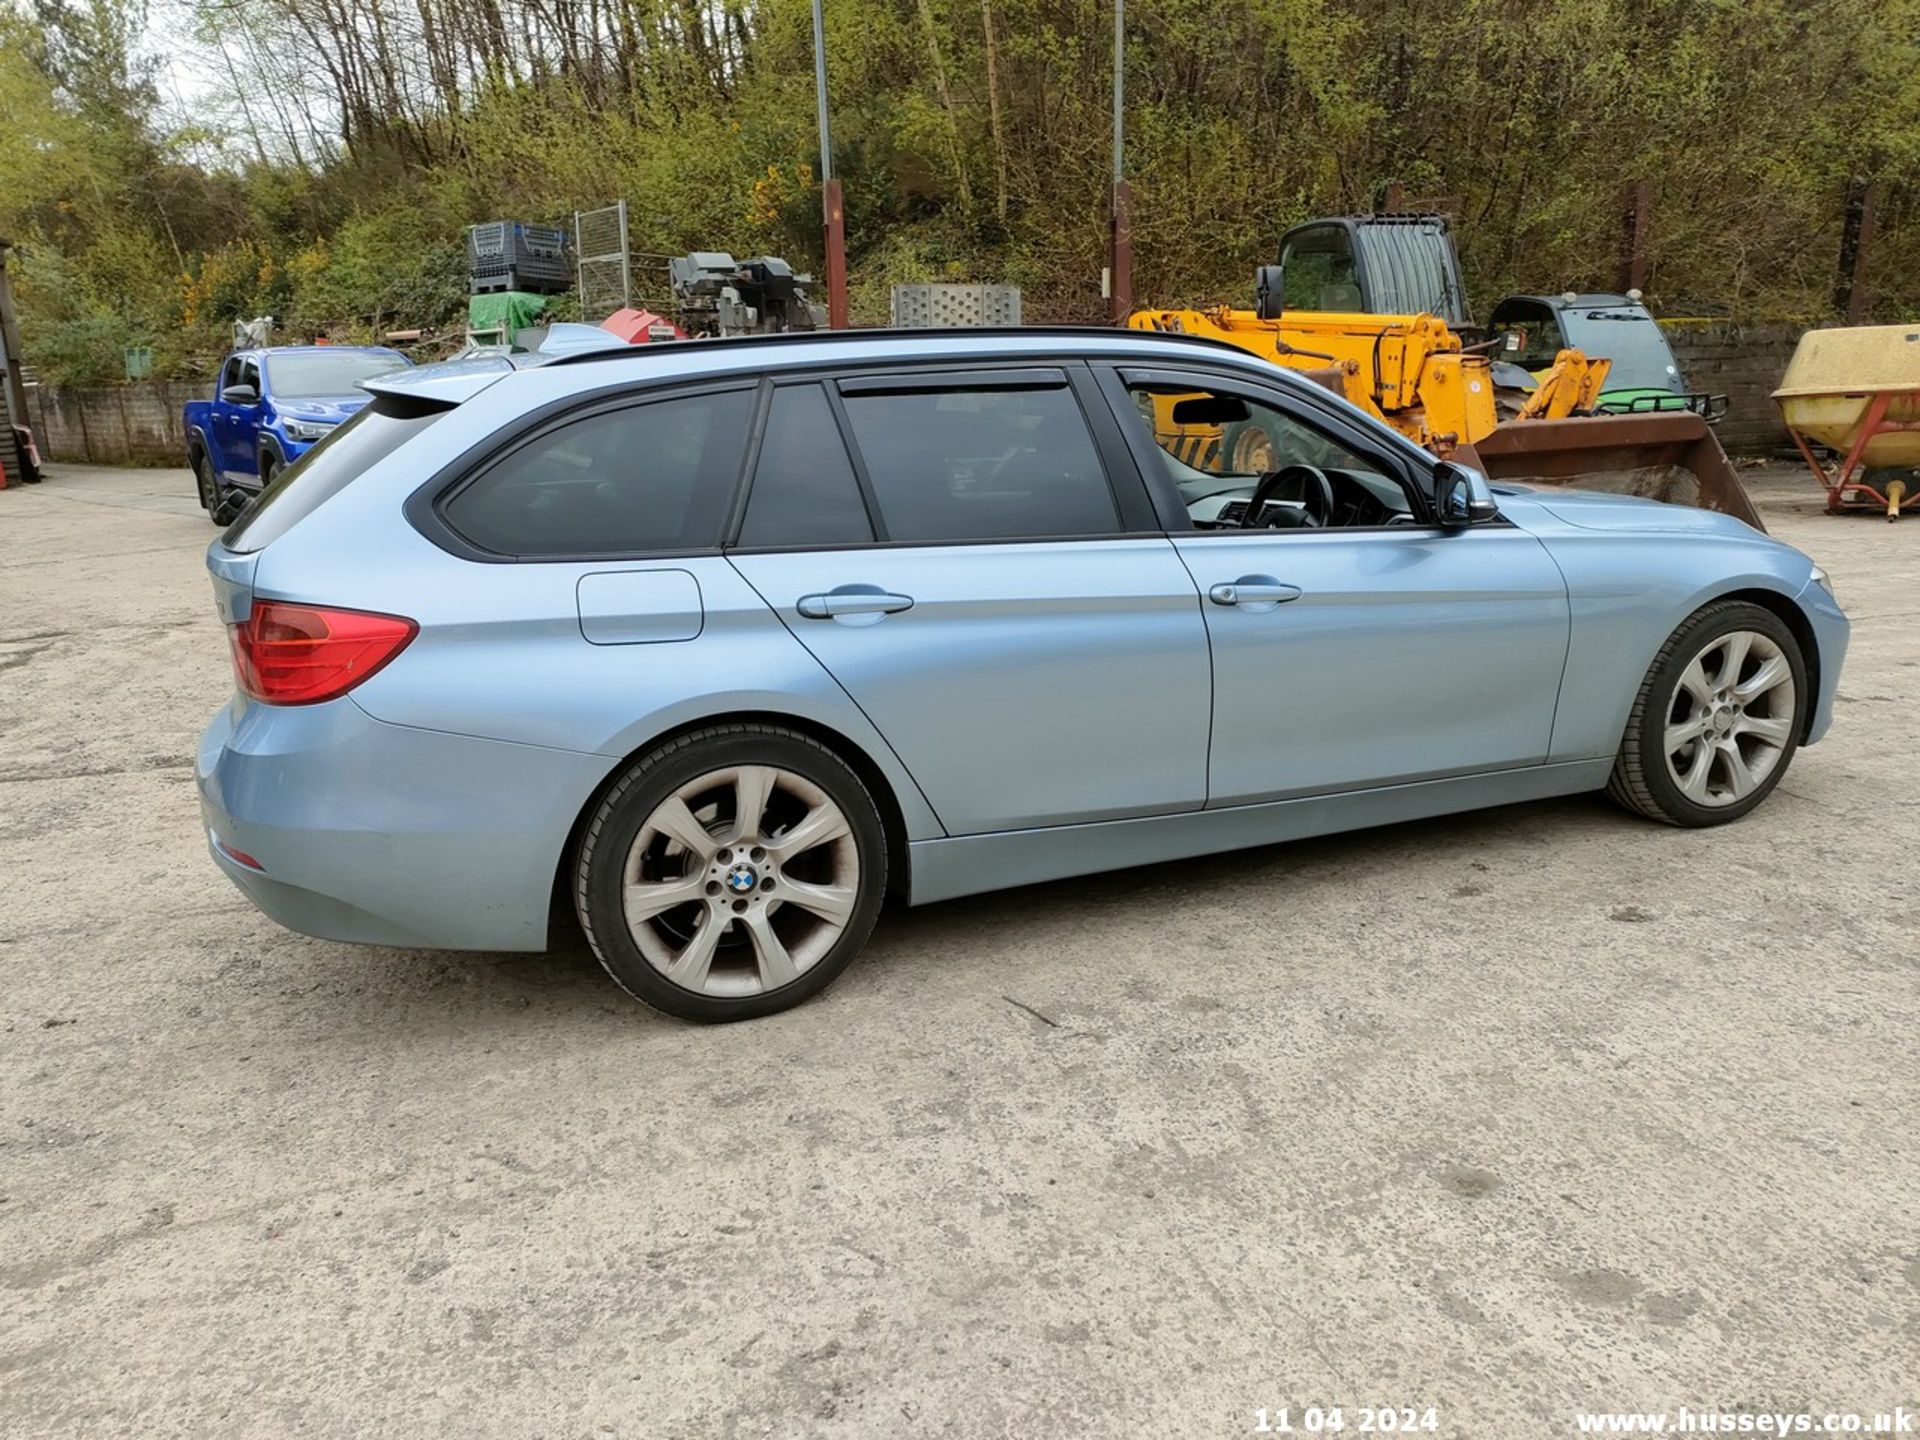 12/62 BMW 320D SE TOURING - 1995cc 5dr Estate (Blue, 174k) - Image 45 of 70